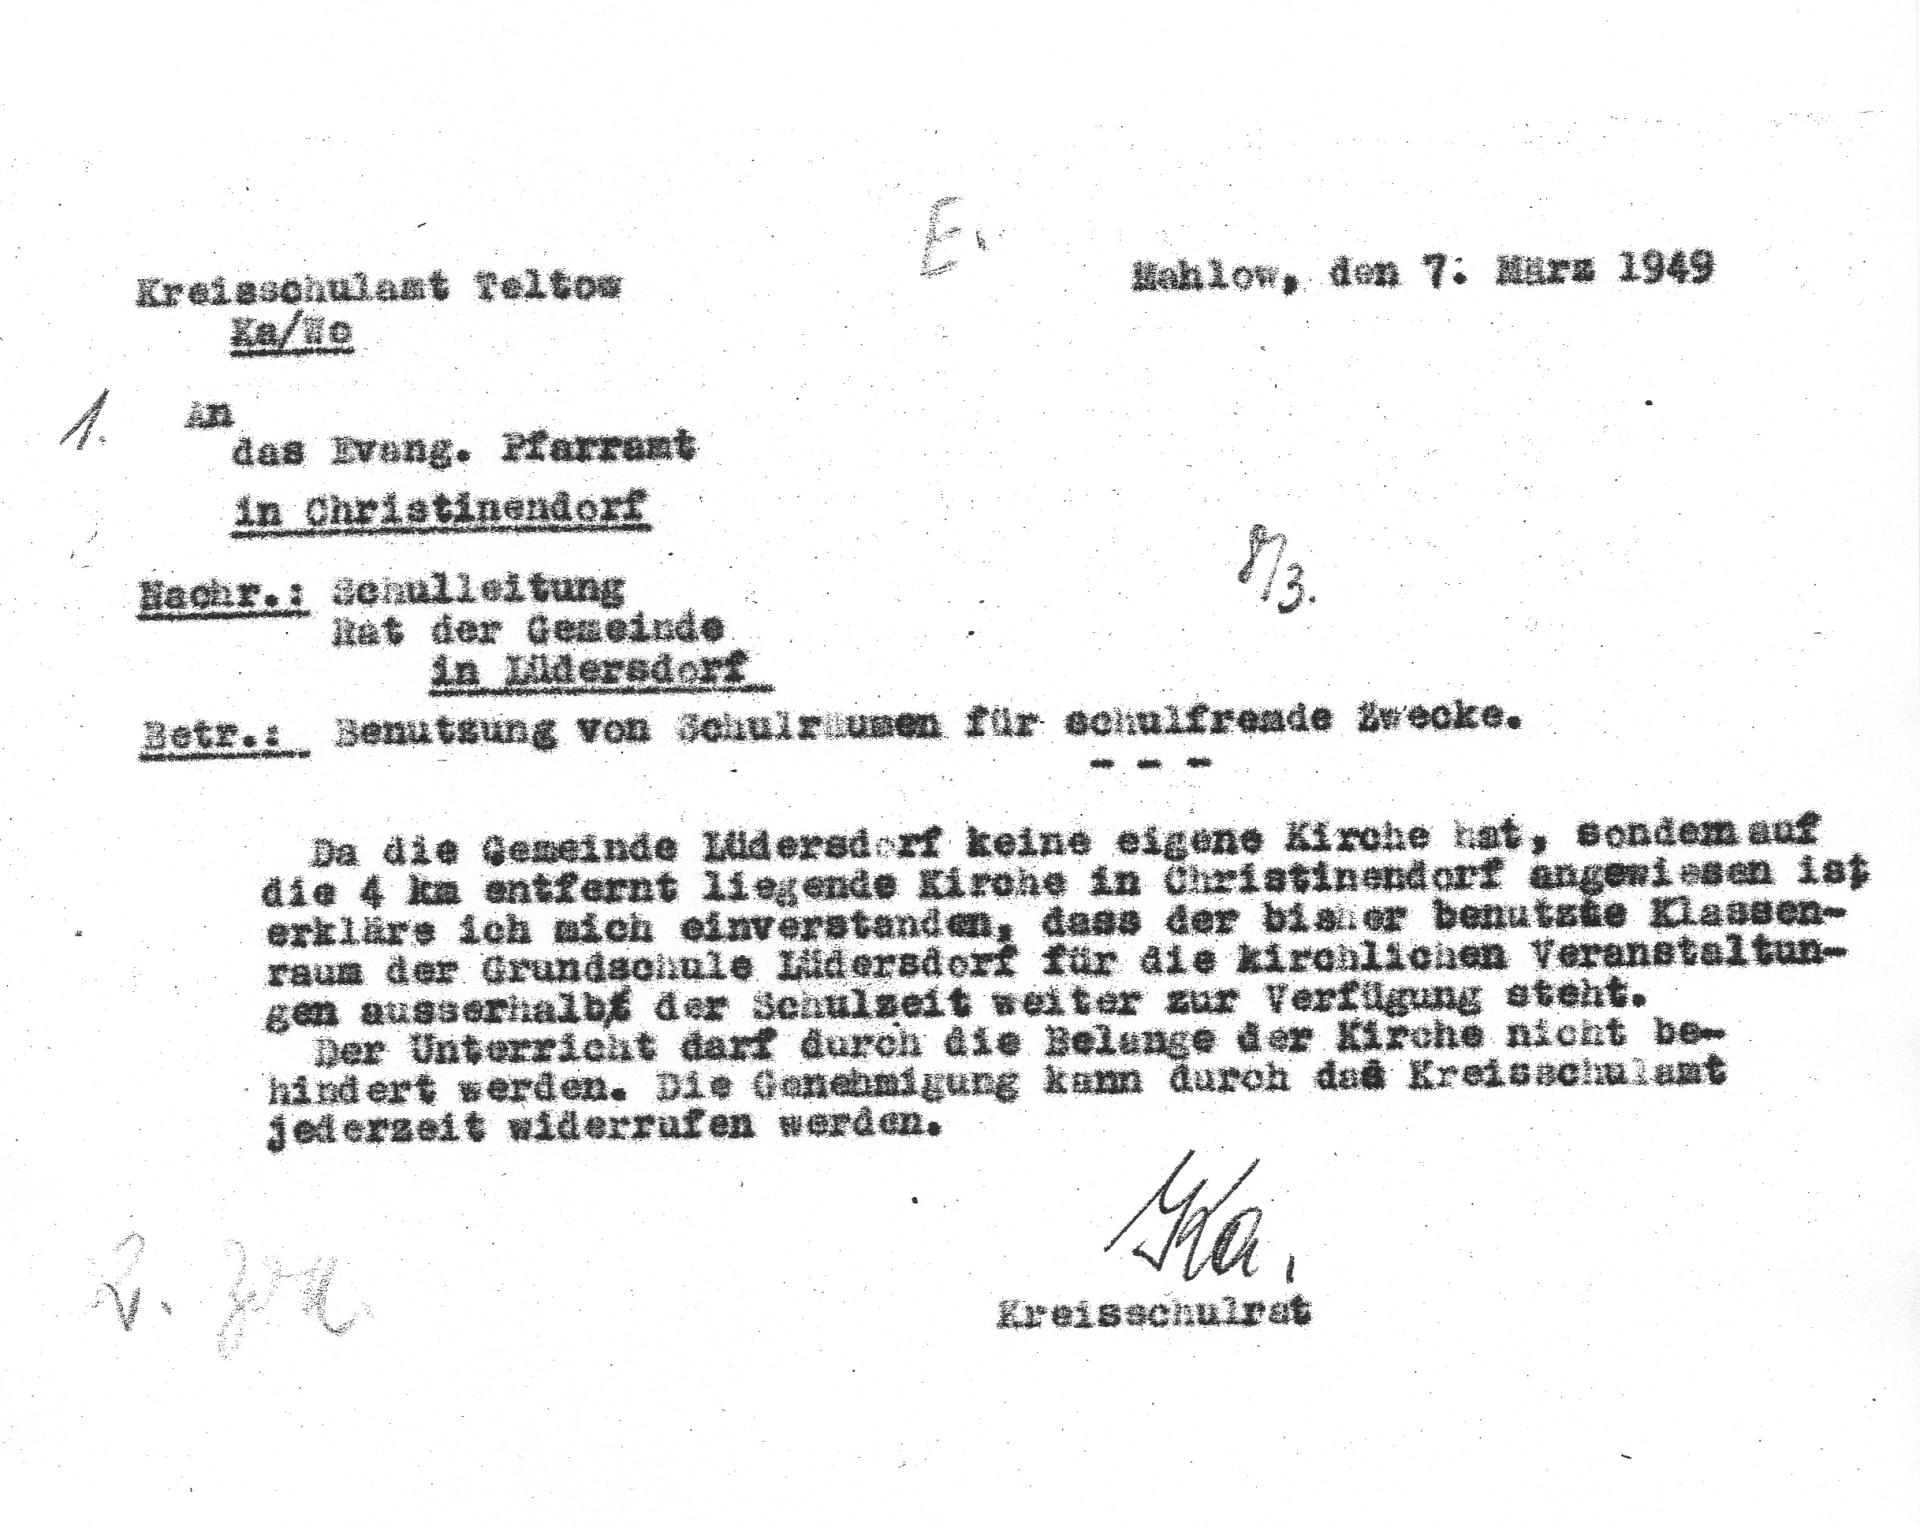 Schreiben Kreisschulrat an evangelisches Pfarreramt - Nutzung der Schulräume - 7.03.1949